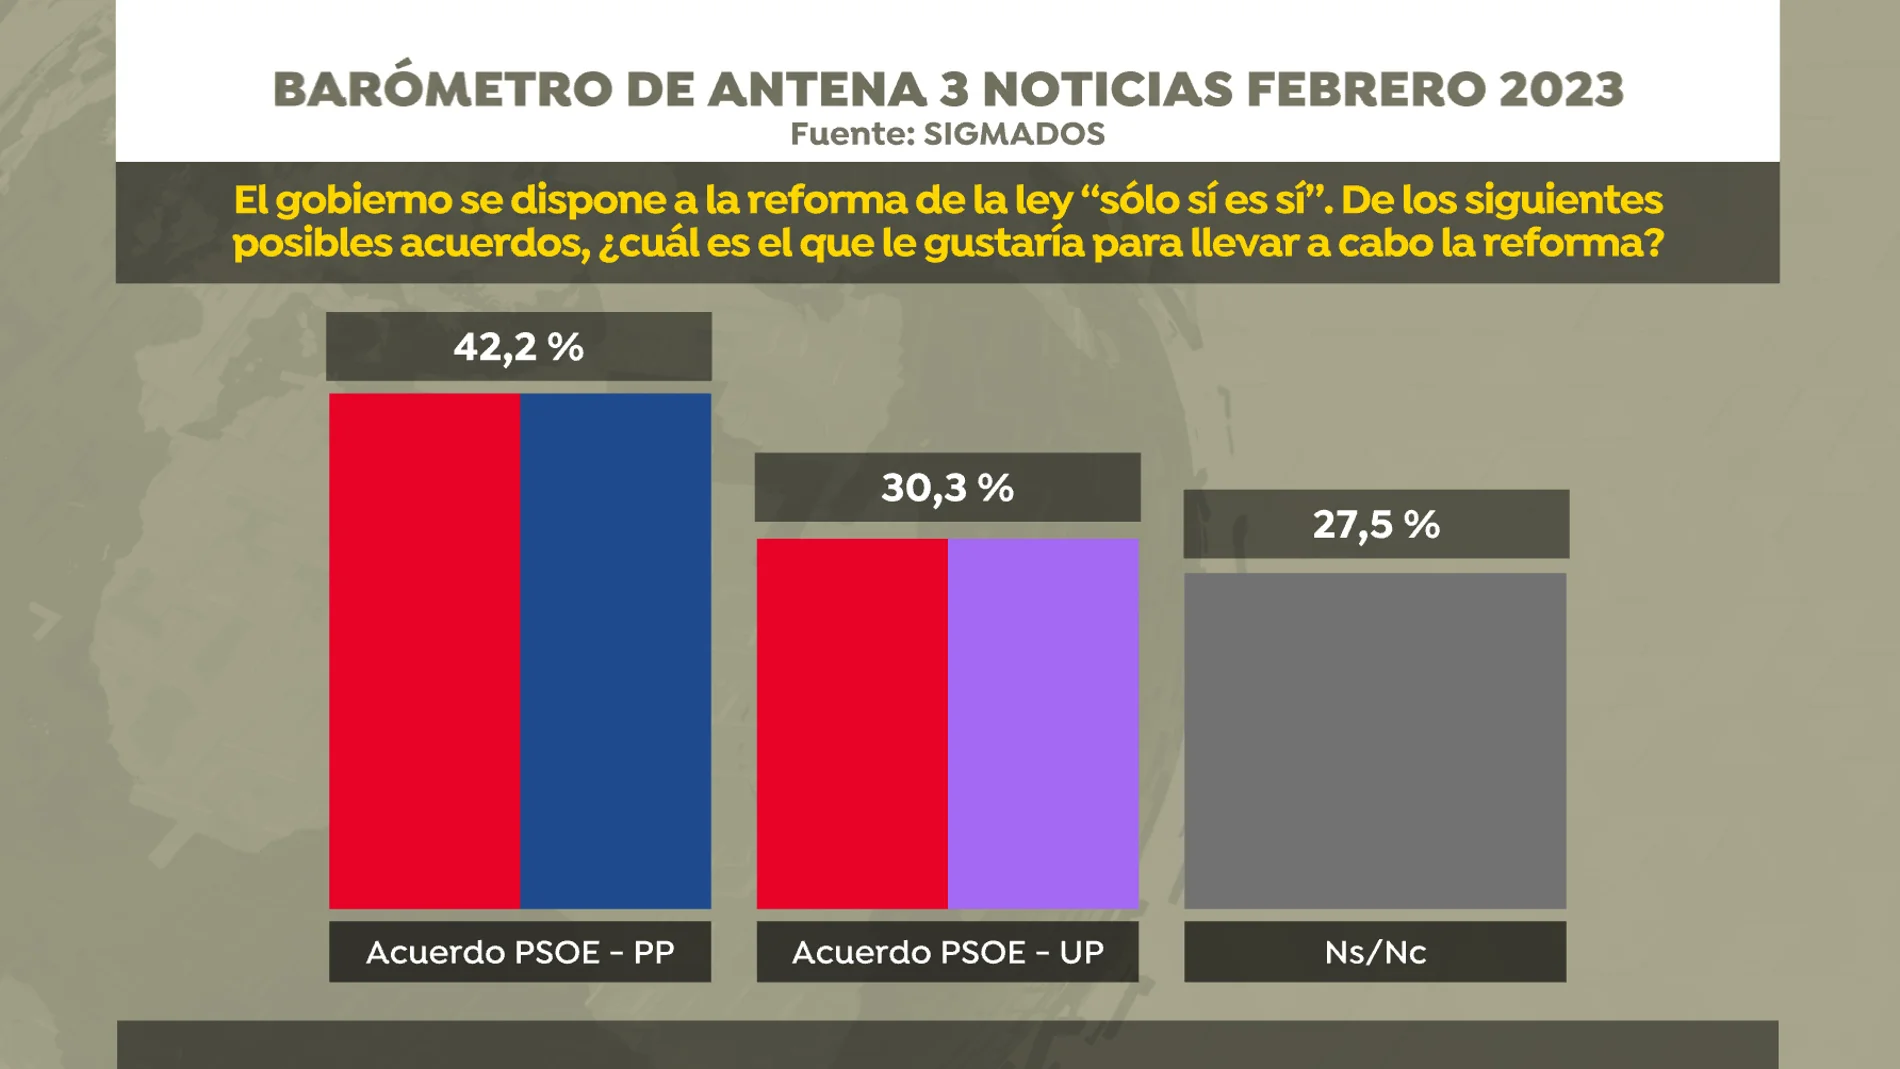 El 42,2% de los españoles opta por un acuerdo PSOE-PP para reformar la ley del &#39;solo sí es sí&#39;